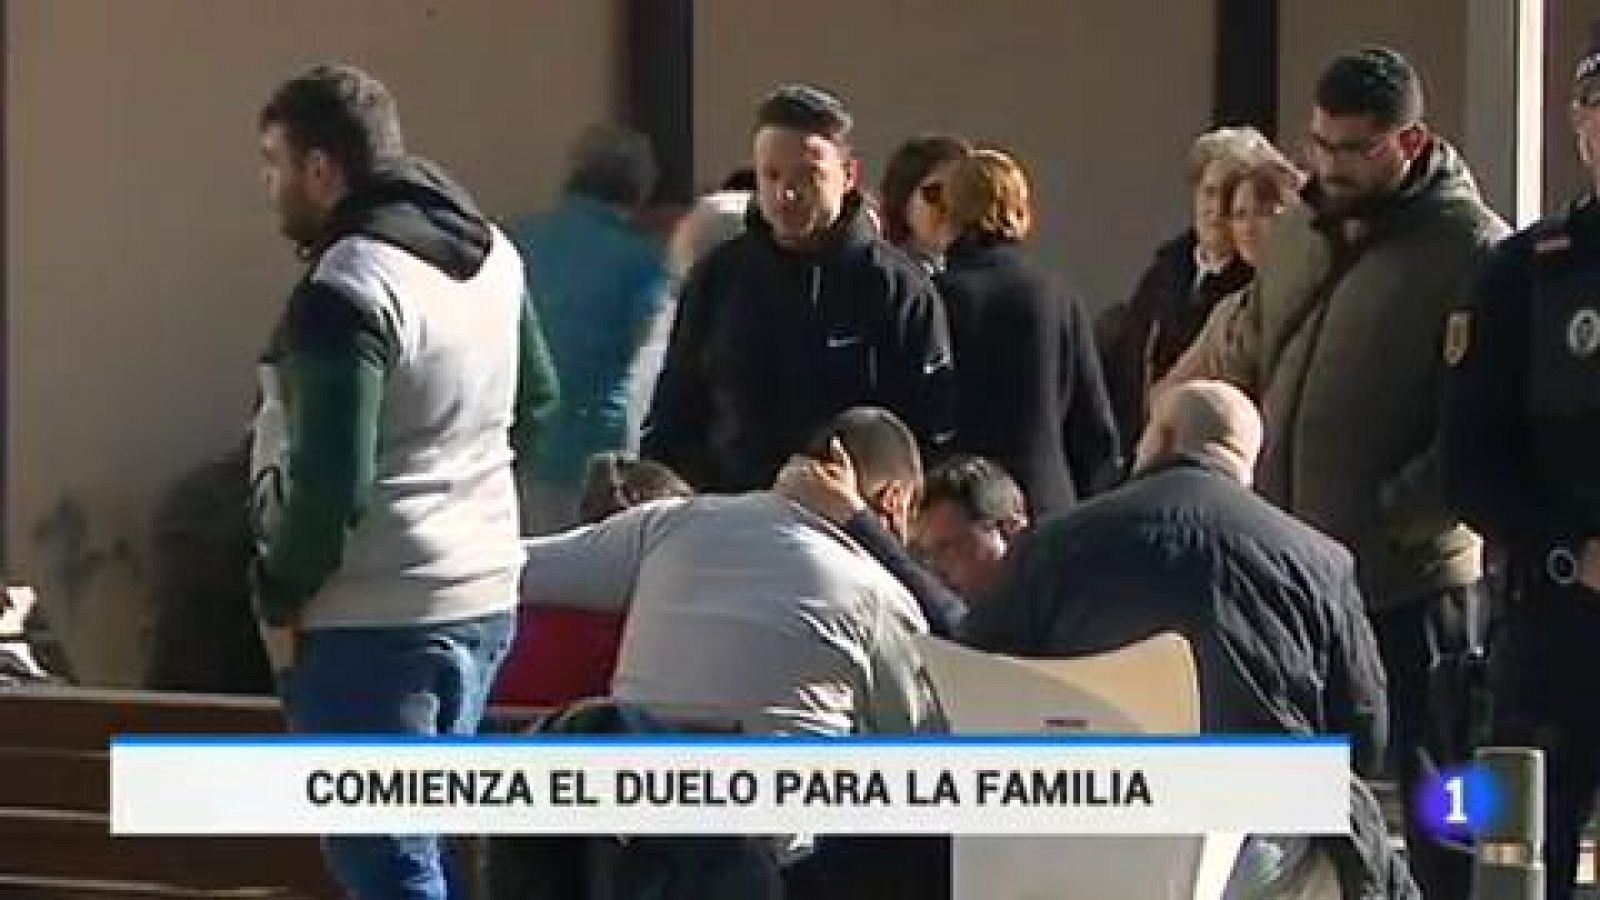 Los padres del pequeño Julen, Victoria y José, han pasado las primeras horas después de conocer la muerte del pequeño arropados por familiares, amigos y vecinos